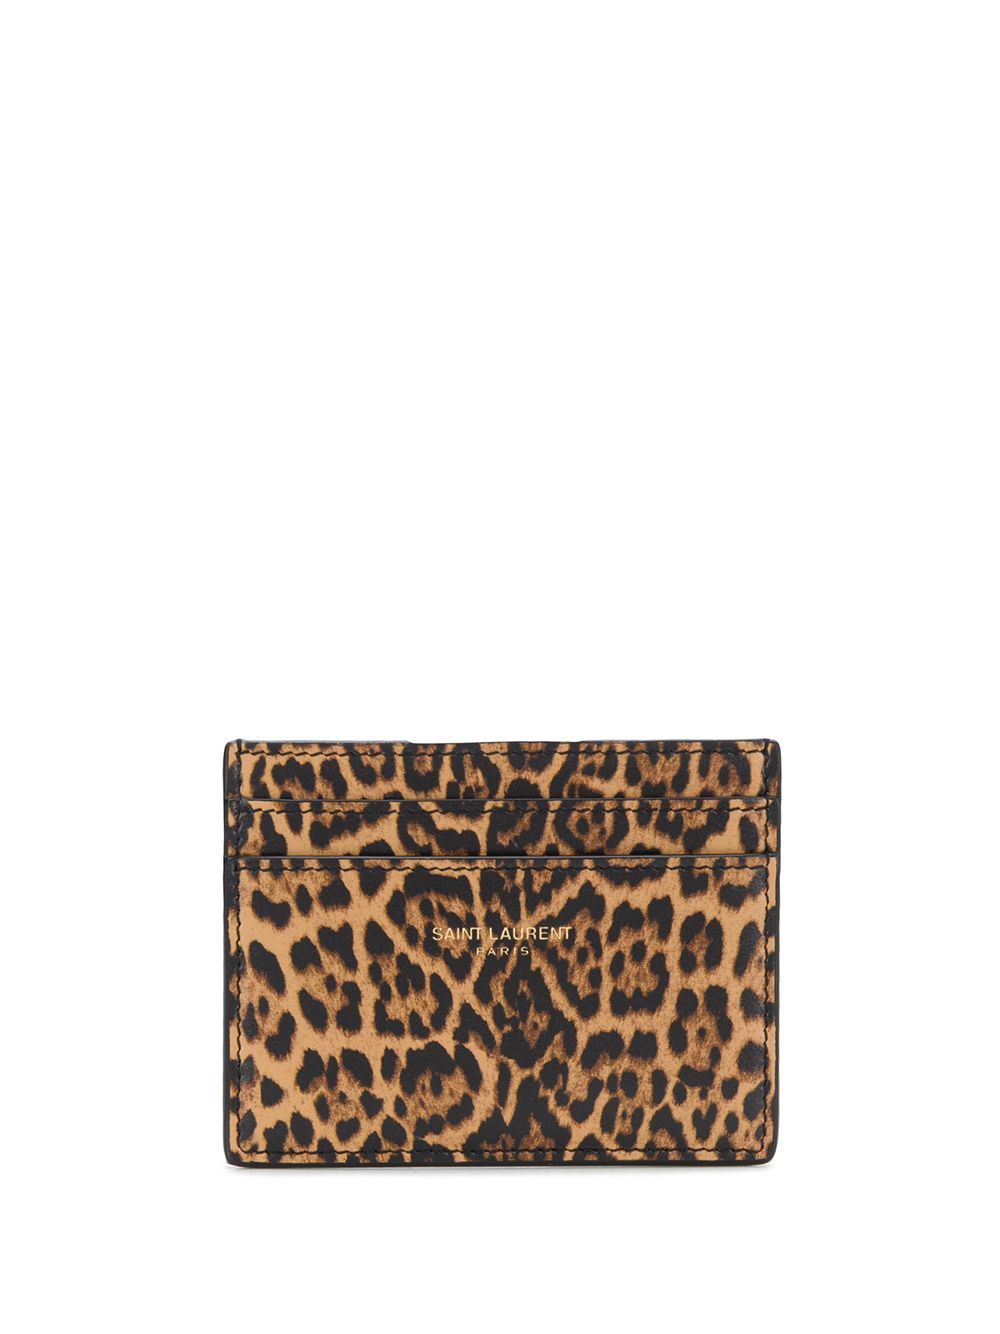 фото Saint laurent кошелек с леопардовым принтом